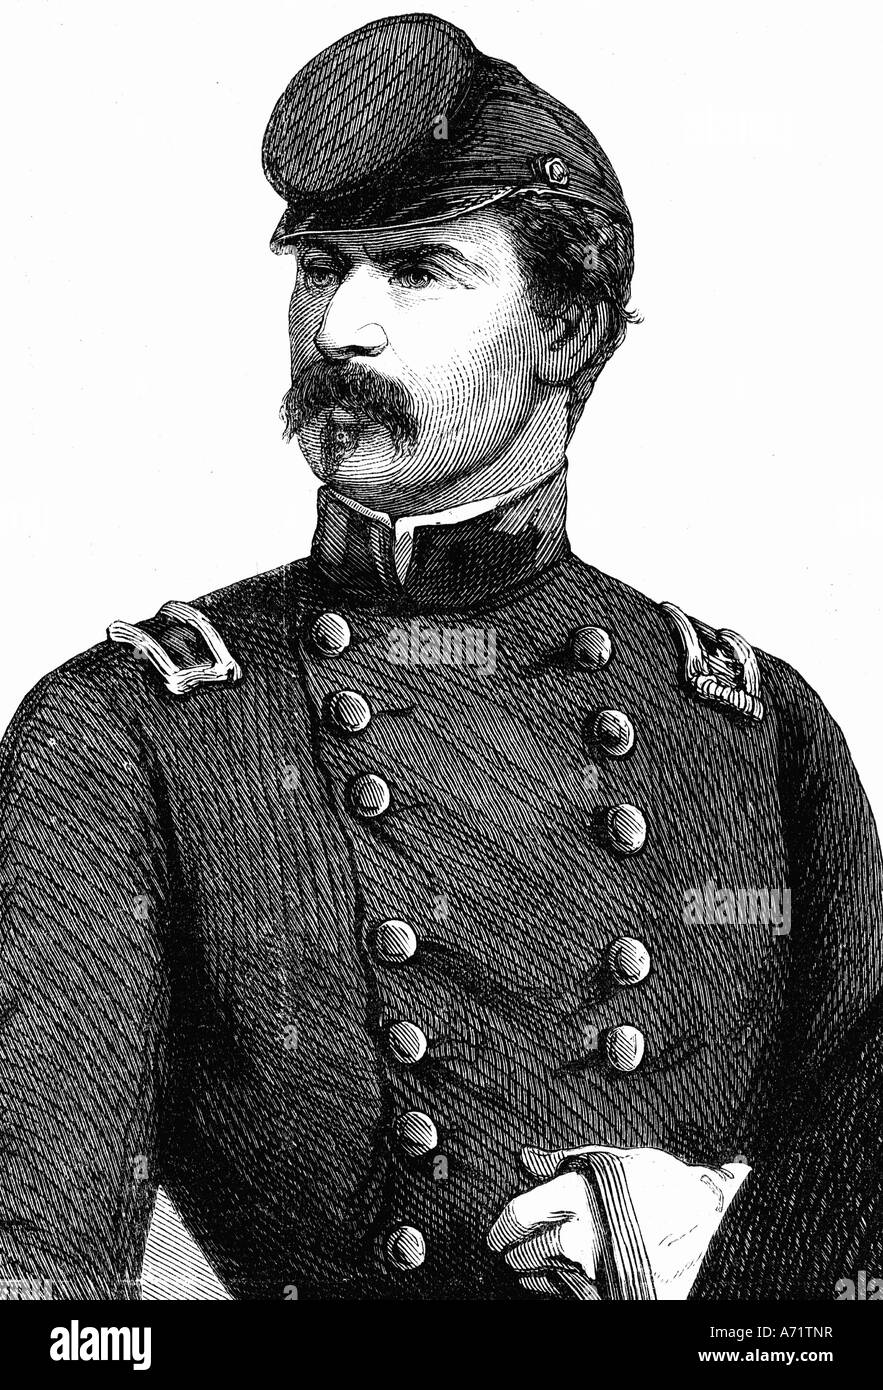 McClellan, George B., 3.12.1826 - 19.10.1885, American generale, Comandante esercito del Potomac 26.7.1961 - 5.11.1862, ritratto, e Foto Stock